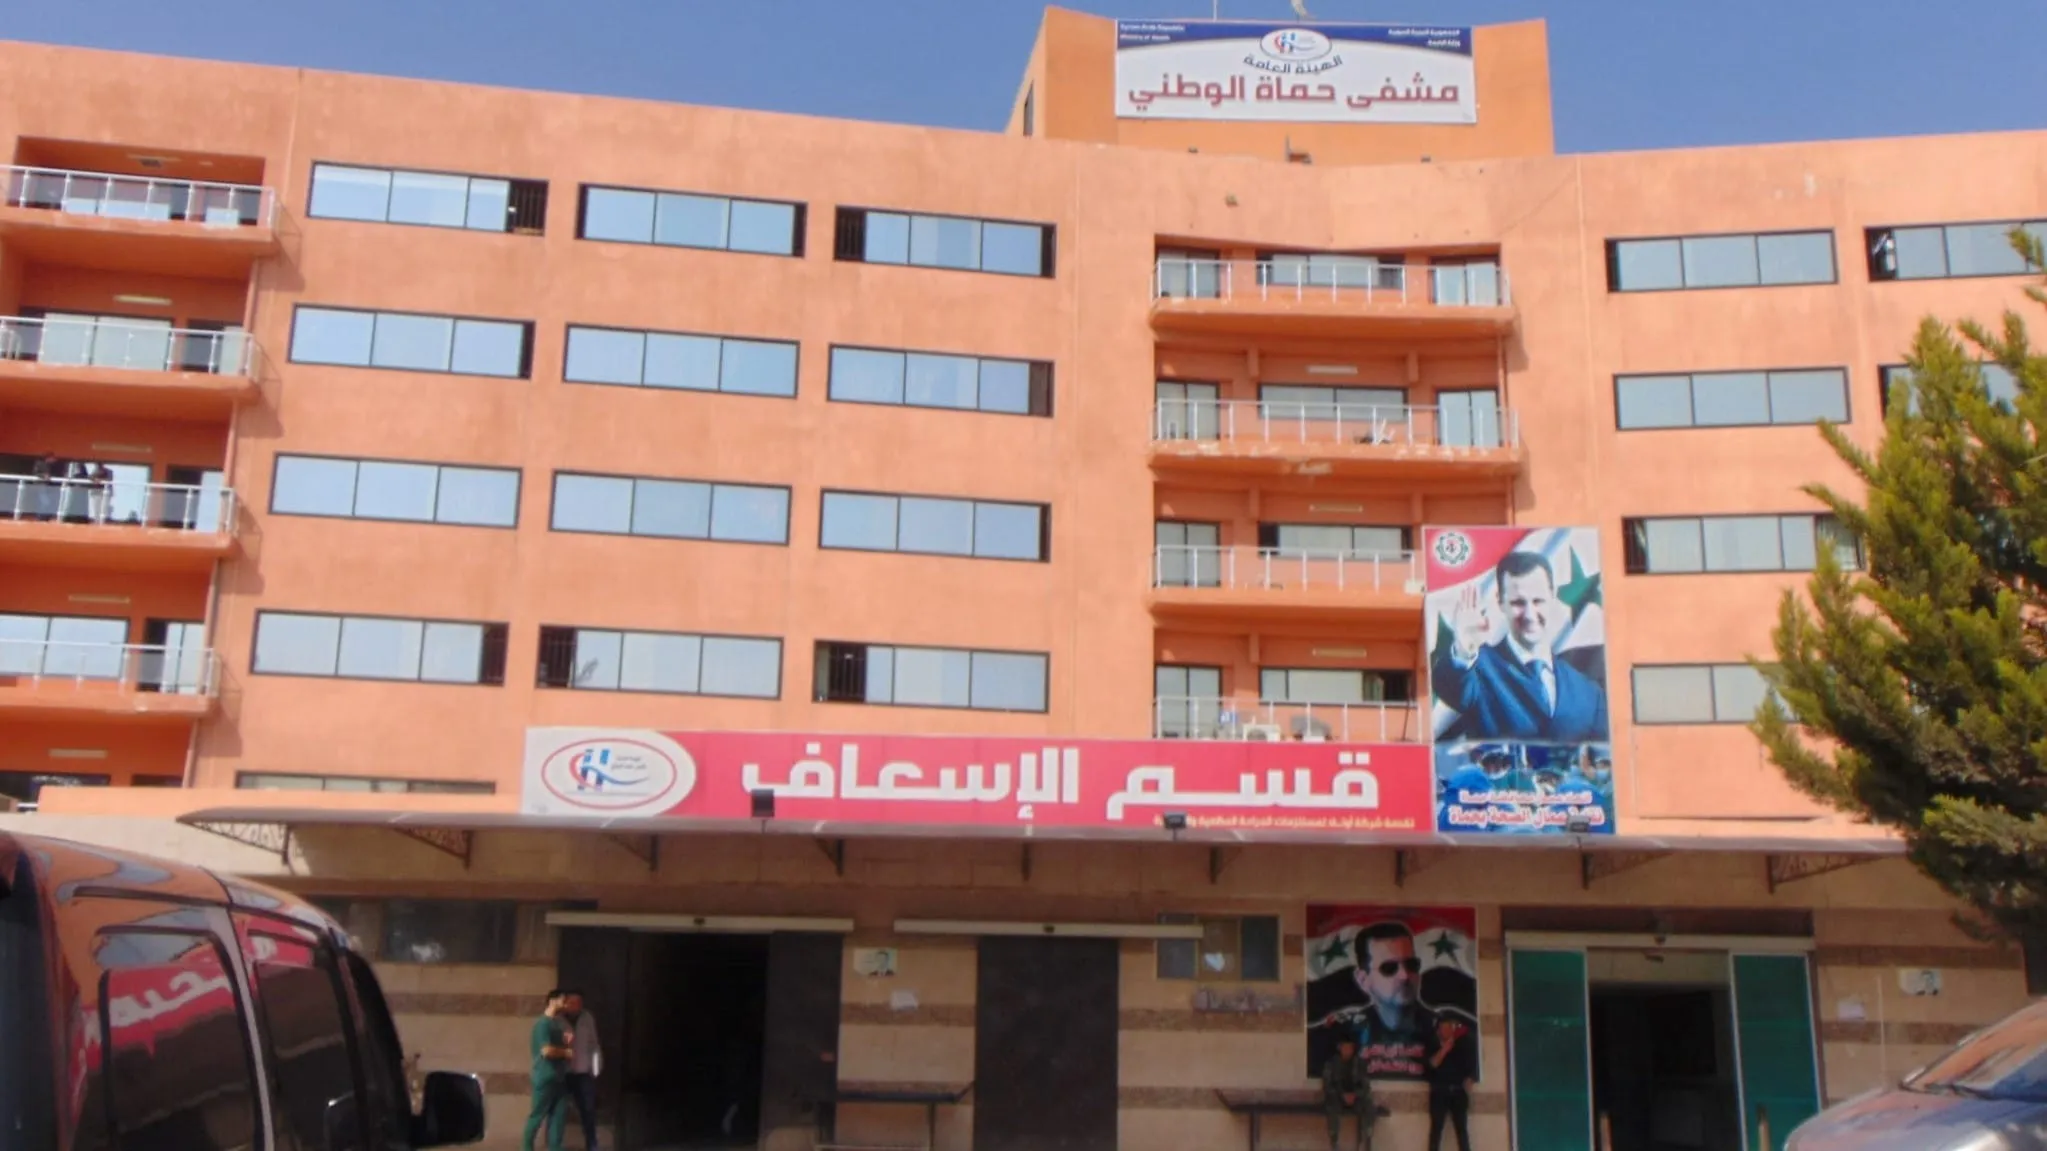 طبيب يتعرض للضرب في "مشفى حماة الوطني" ومسؤول طبي يتوعد بالمحاسبة